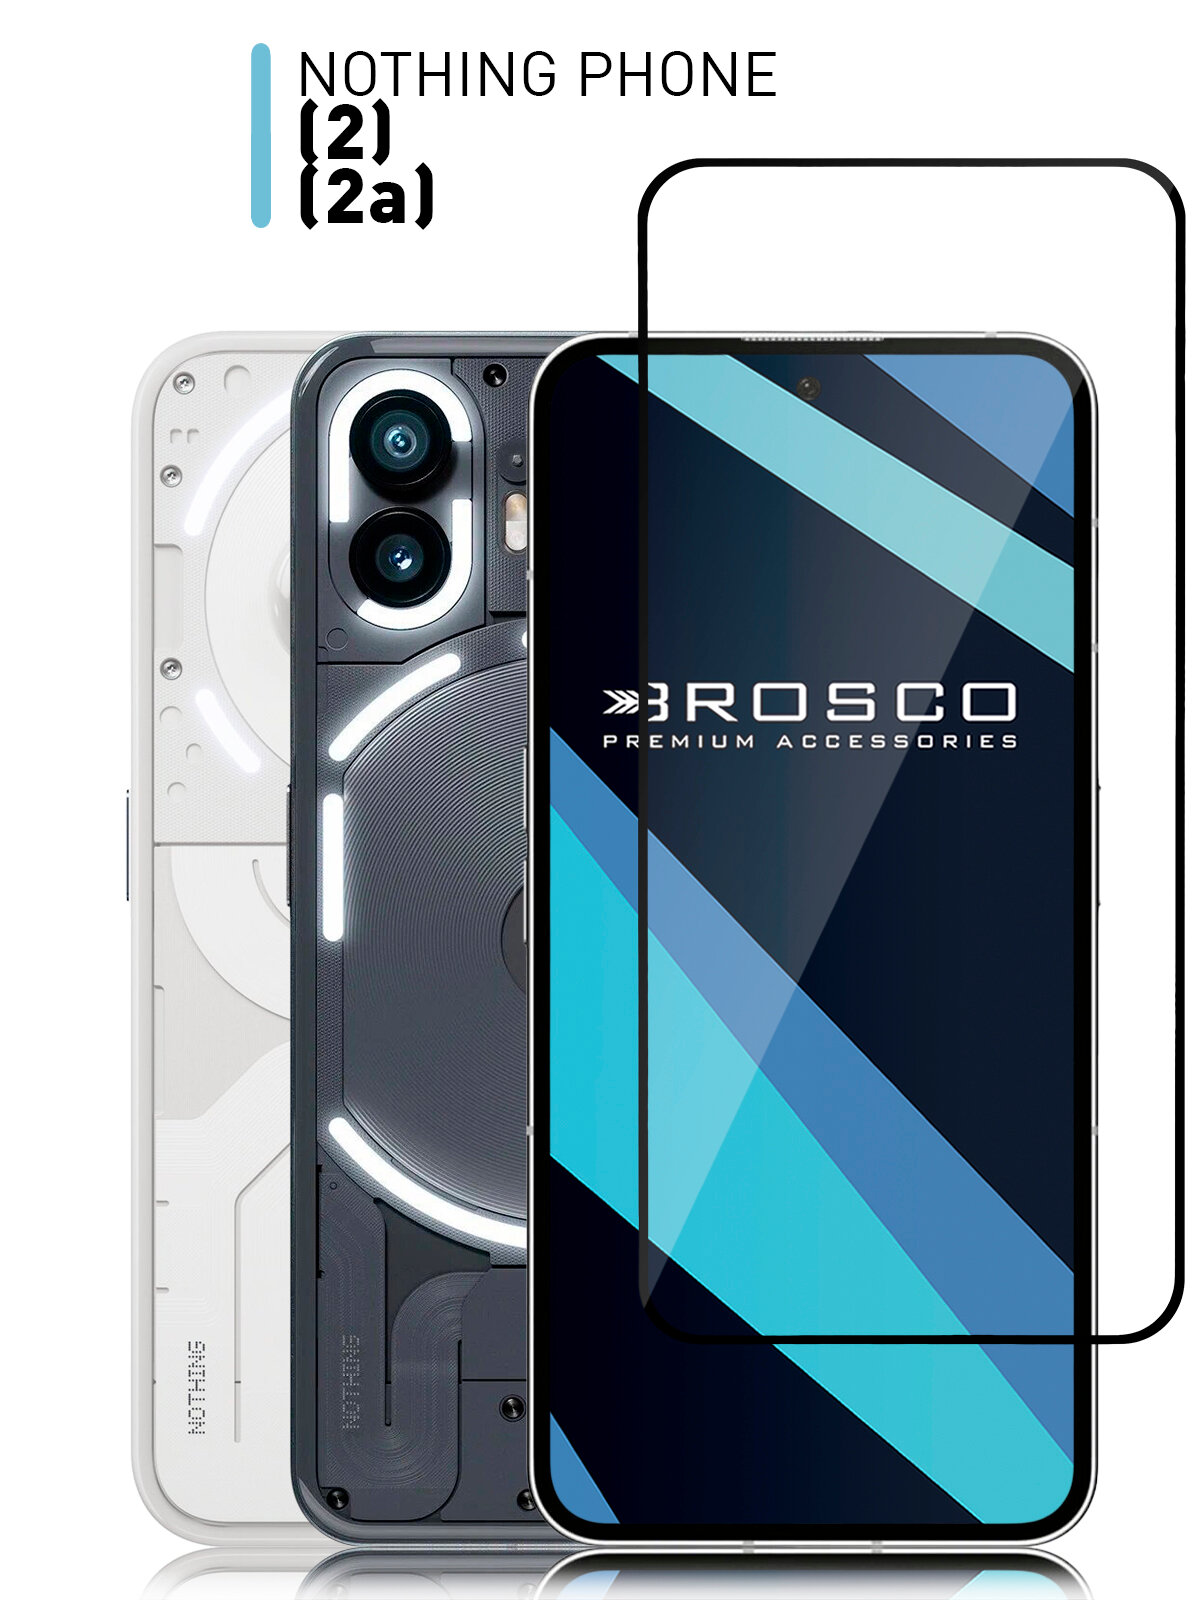 Защитное стекло ROSCO для Nothing Phone 2 и 2A (Насинг фон 2 и Насинг фон 2А, 2а) закалённое с олеофобным покрытием, прозрачное стекло, с рамкой